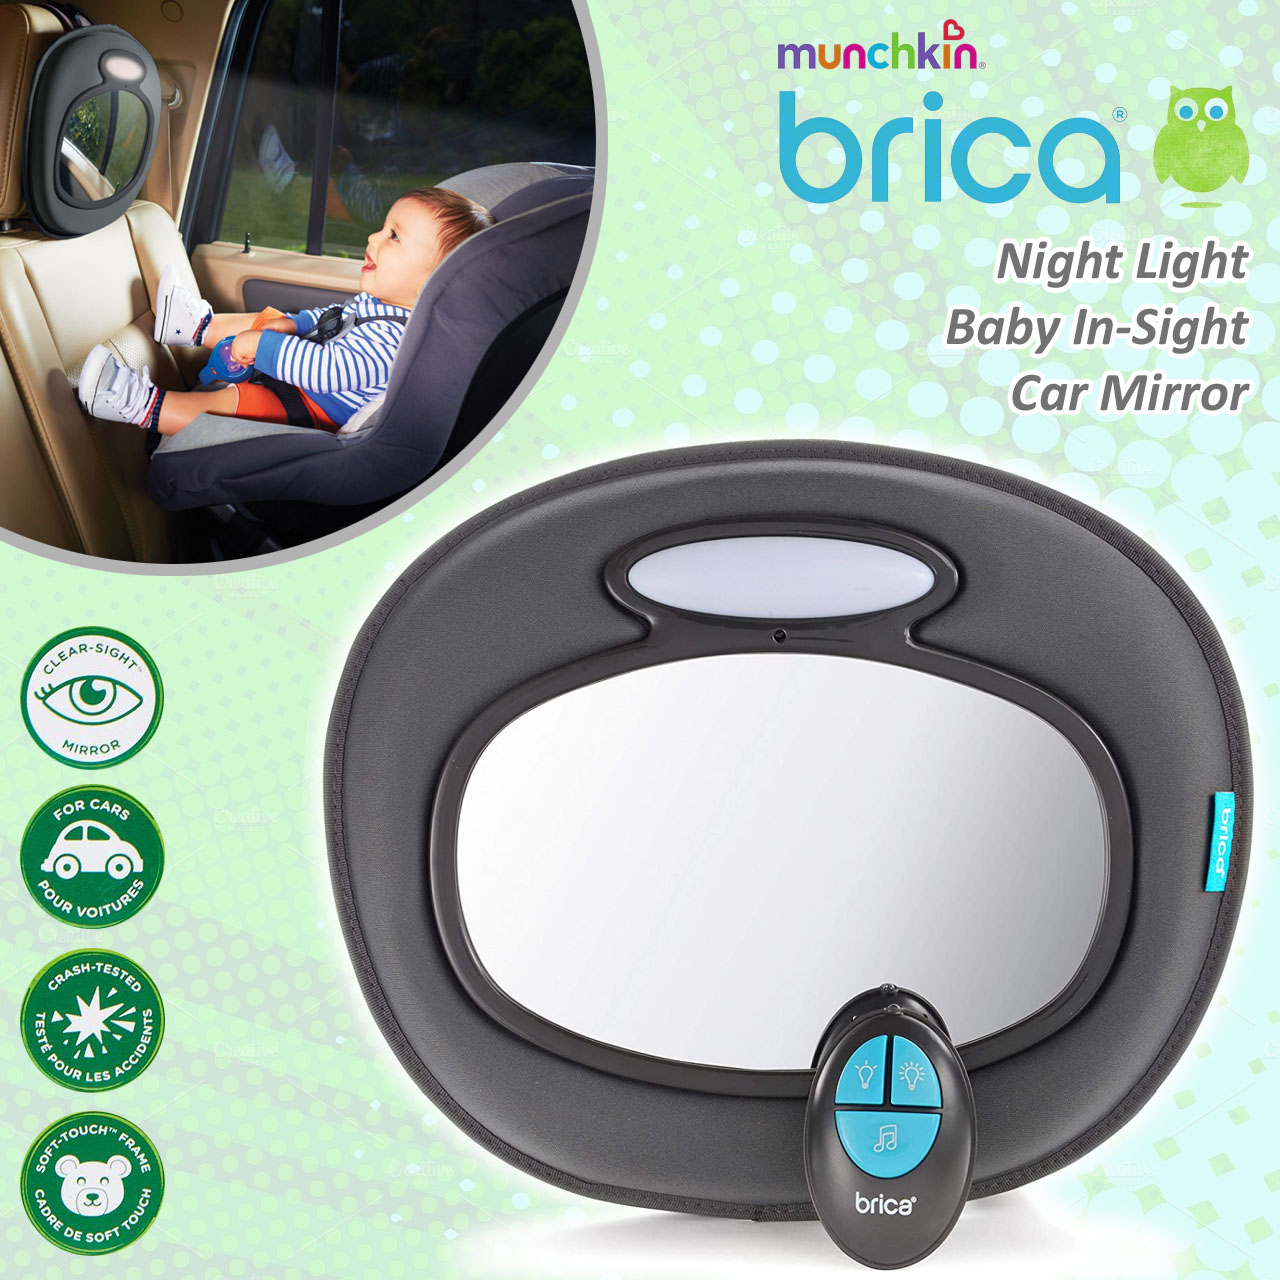 Munchkin Brica Night Light Baby In-Sight Car Mirror กระจกมองหลังติดเบาะรถ มีไฟส่องสว่าง